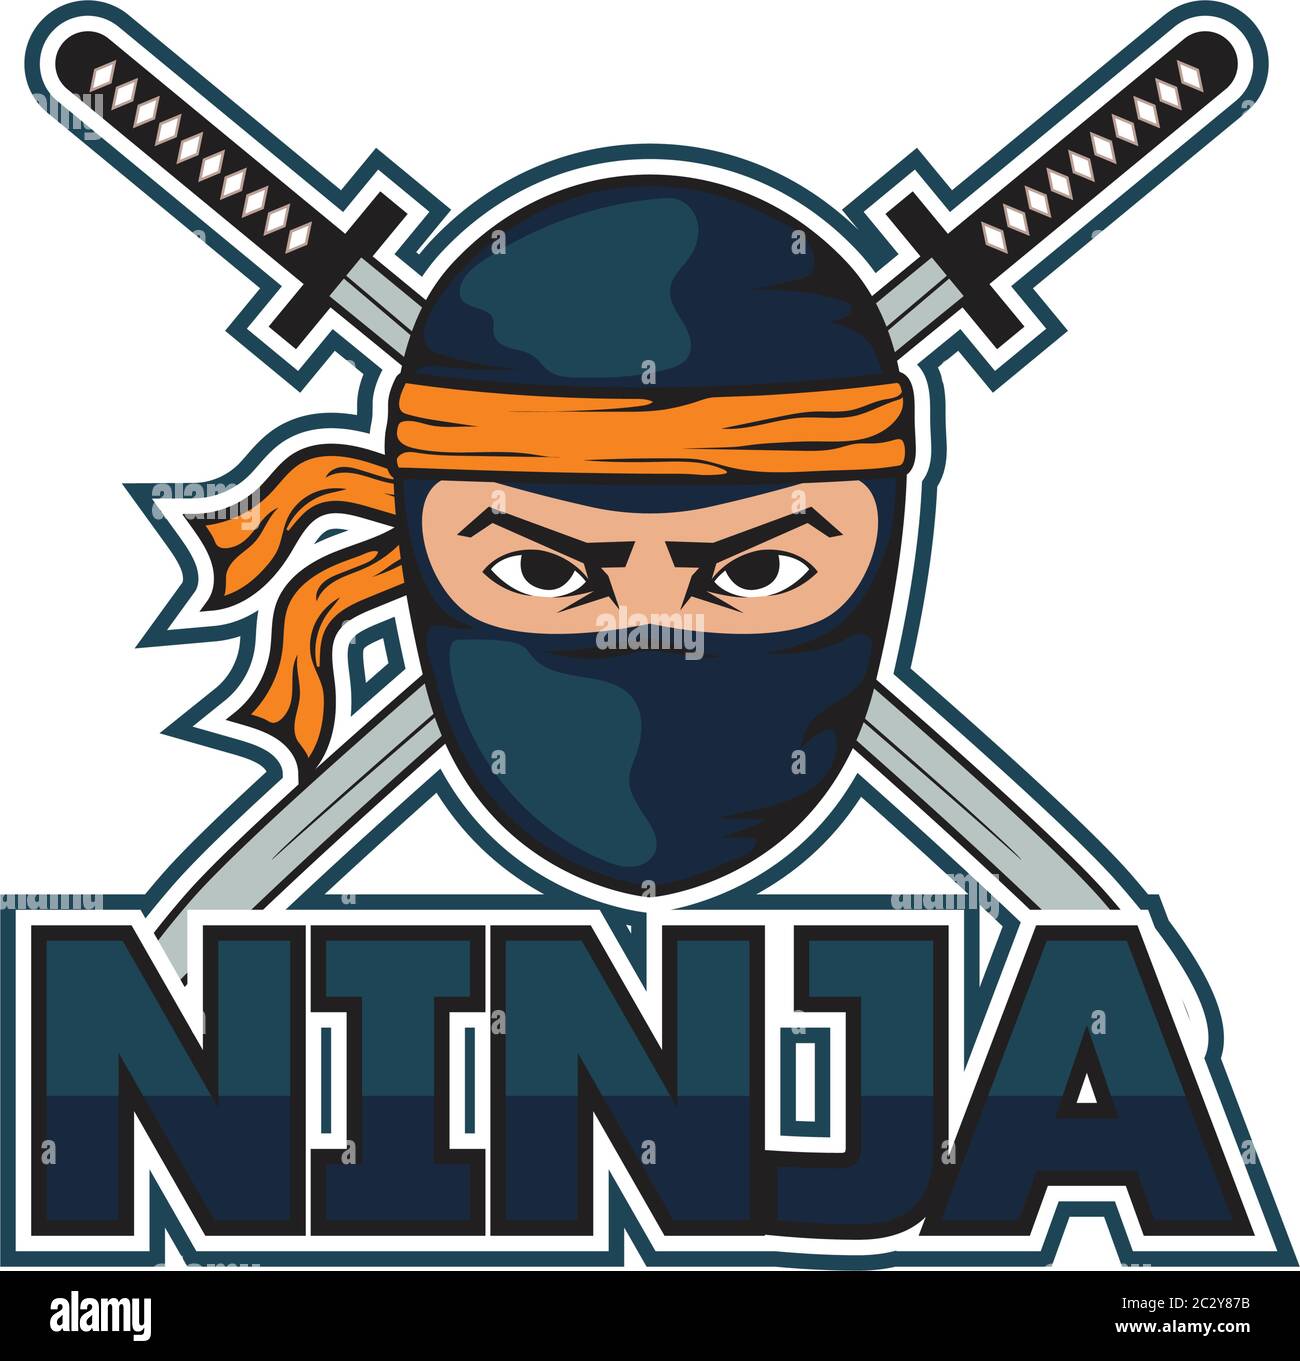 Ilustración de vector de icono de espada ninja icono de dibujos